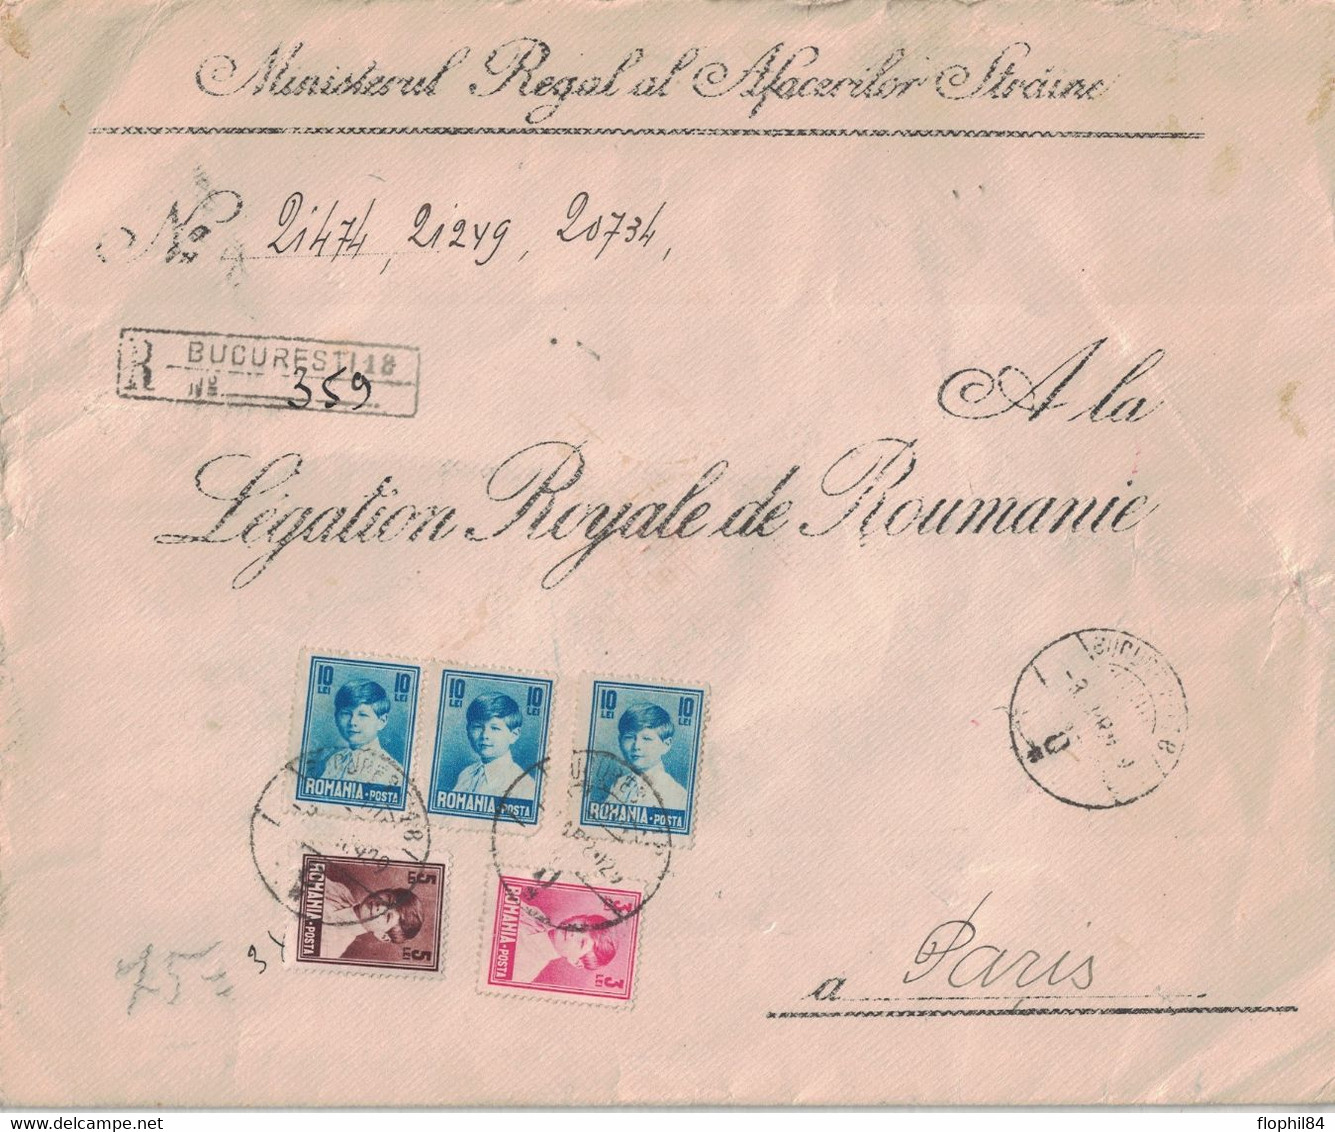 ROUMANIE - ENVELOPPE RECOMMANDEE CORRESPONDANCE OFFICIELLE POUR LA LEGATION ROYALE DE ROUMANIE A PARIS EN 1929. - Cartas & Documentos